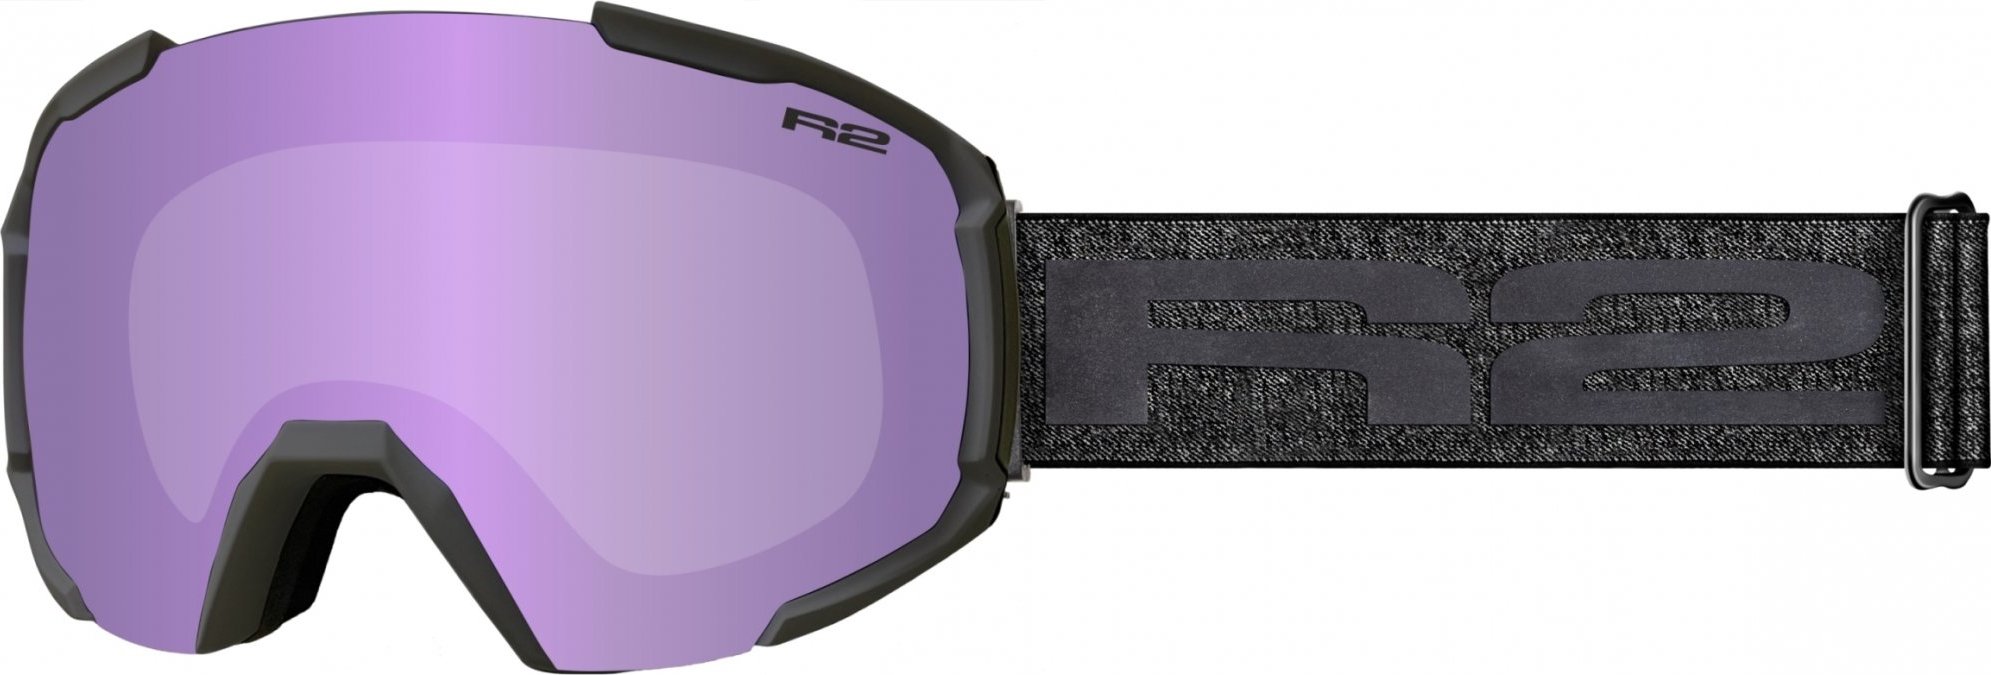 Unisex lyžařské brýle R2 Glacier černé